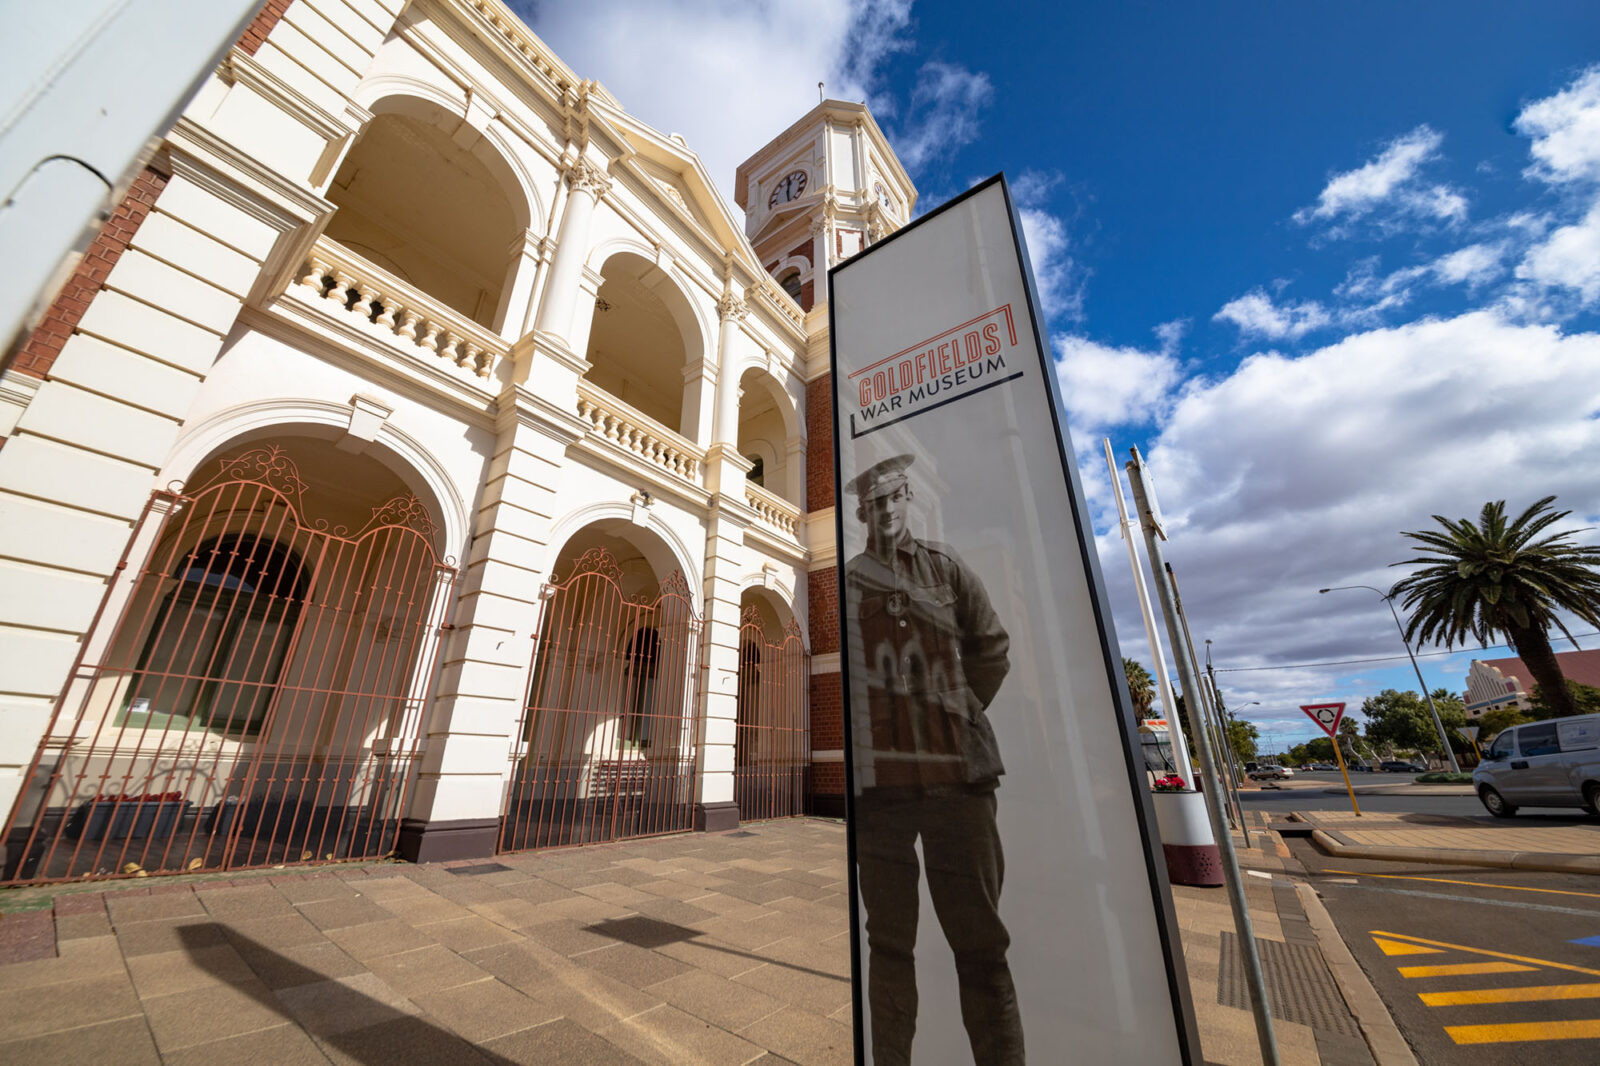 10-goldfields-war-museum-exhibition